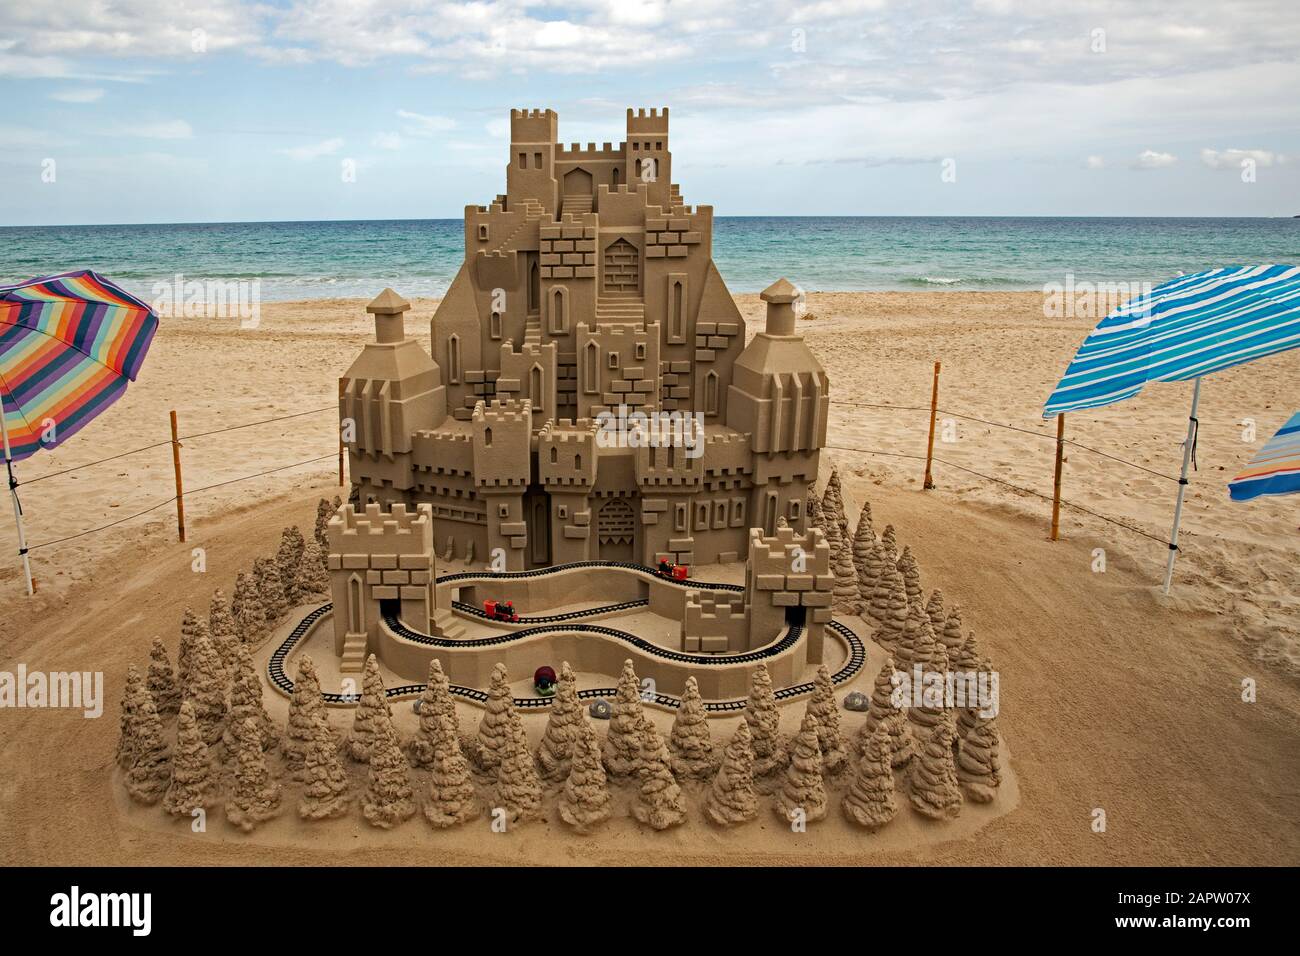 Un modellino ferroviario corre intorno ad un gigantesco castello di sabbia sulla spiaggia di Cala Millor, Maiorca, Spagna. Foto Stock